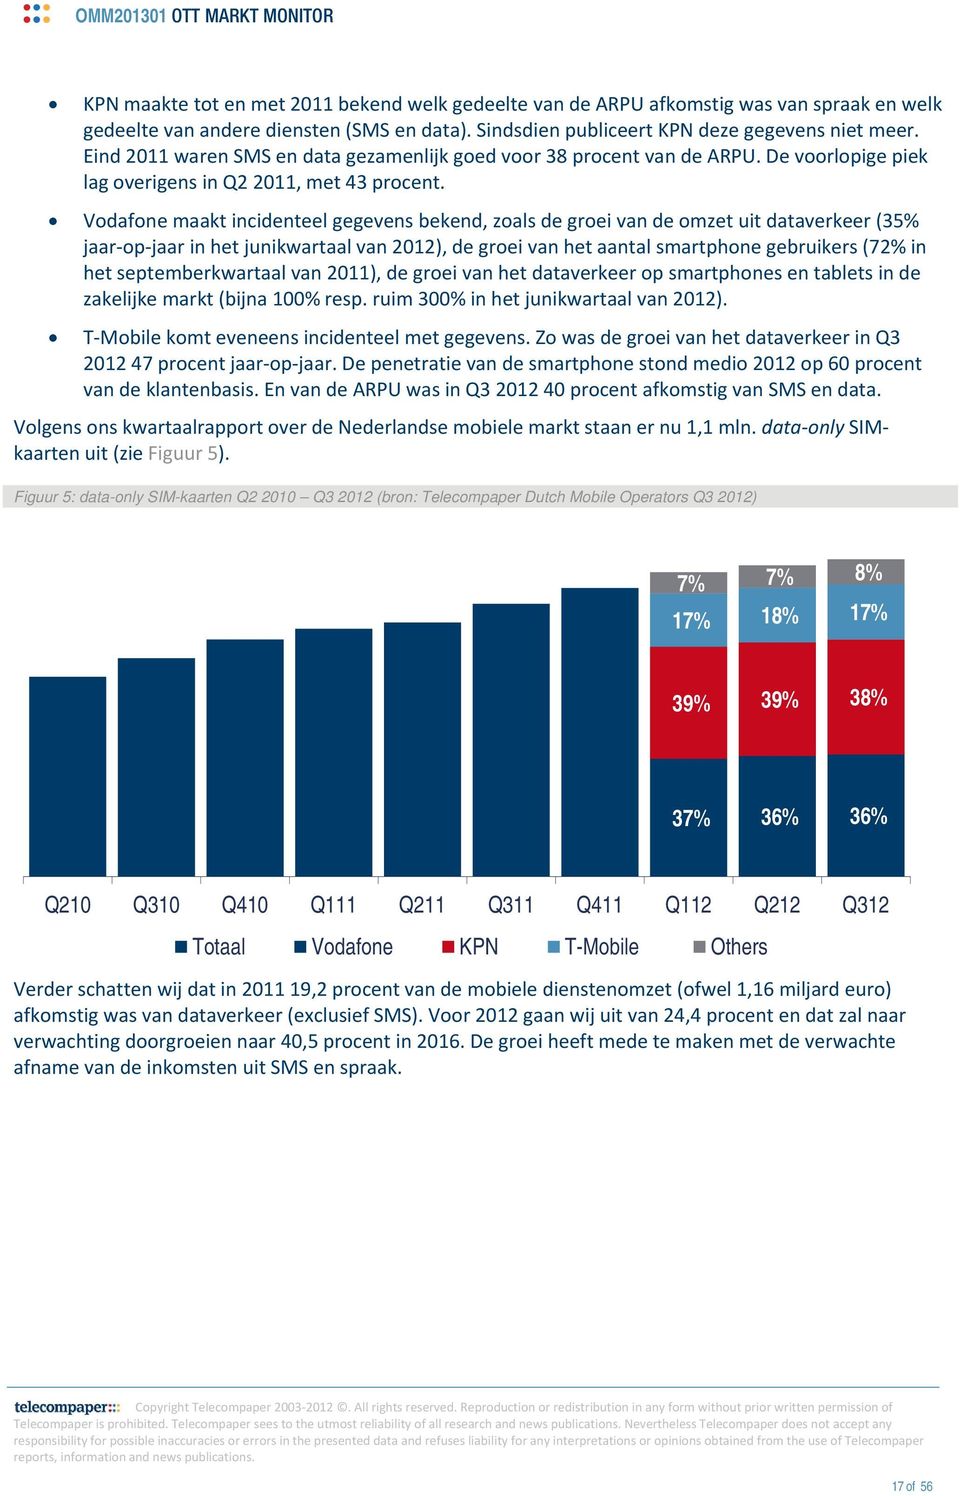 Vodafone maakt incidenteel gegevens bekend, zoals de groei van de omzet uit dataverkeer (35% jaar op jaar in het junikwartaal van 2012), de groei van het aantal smartphone gebruikers (72% in het